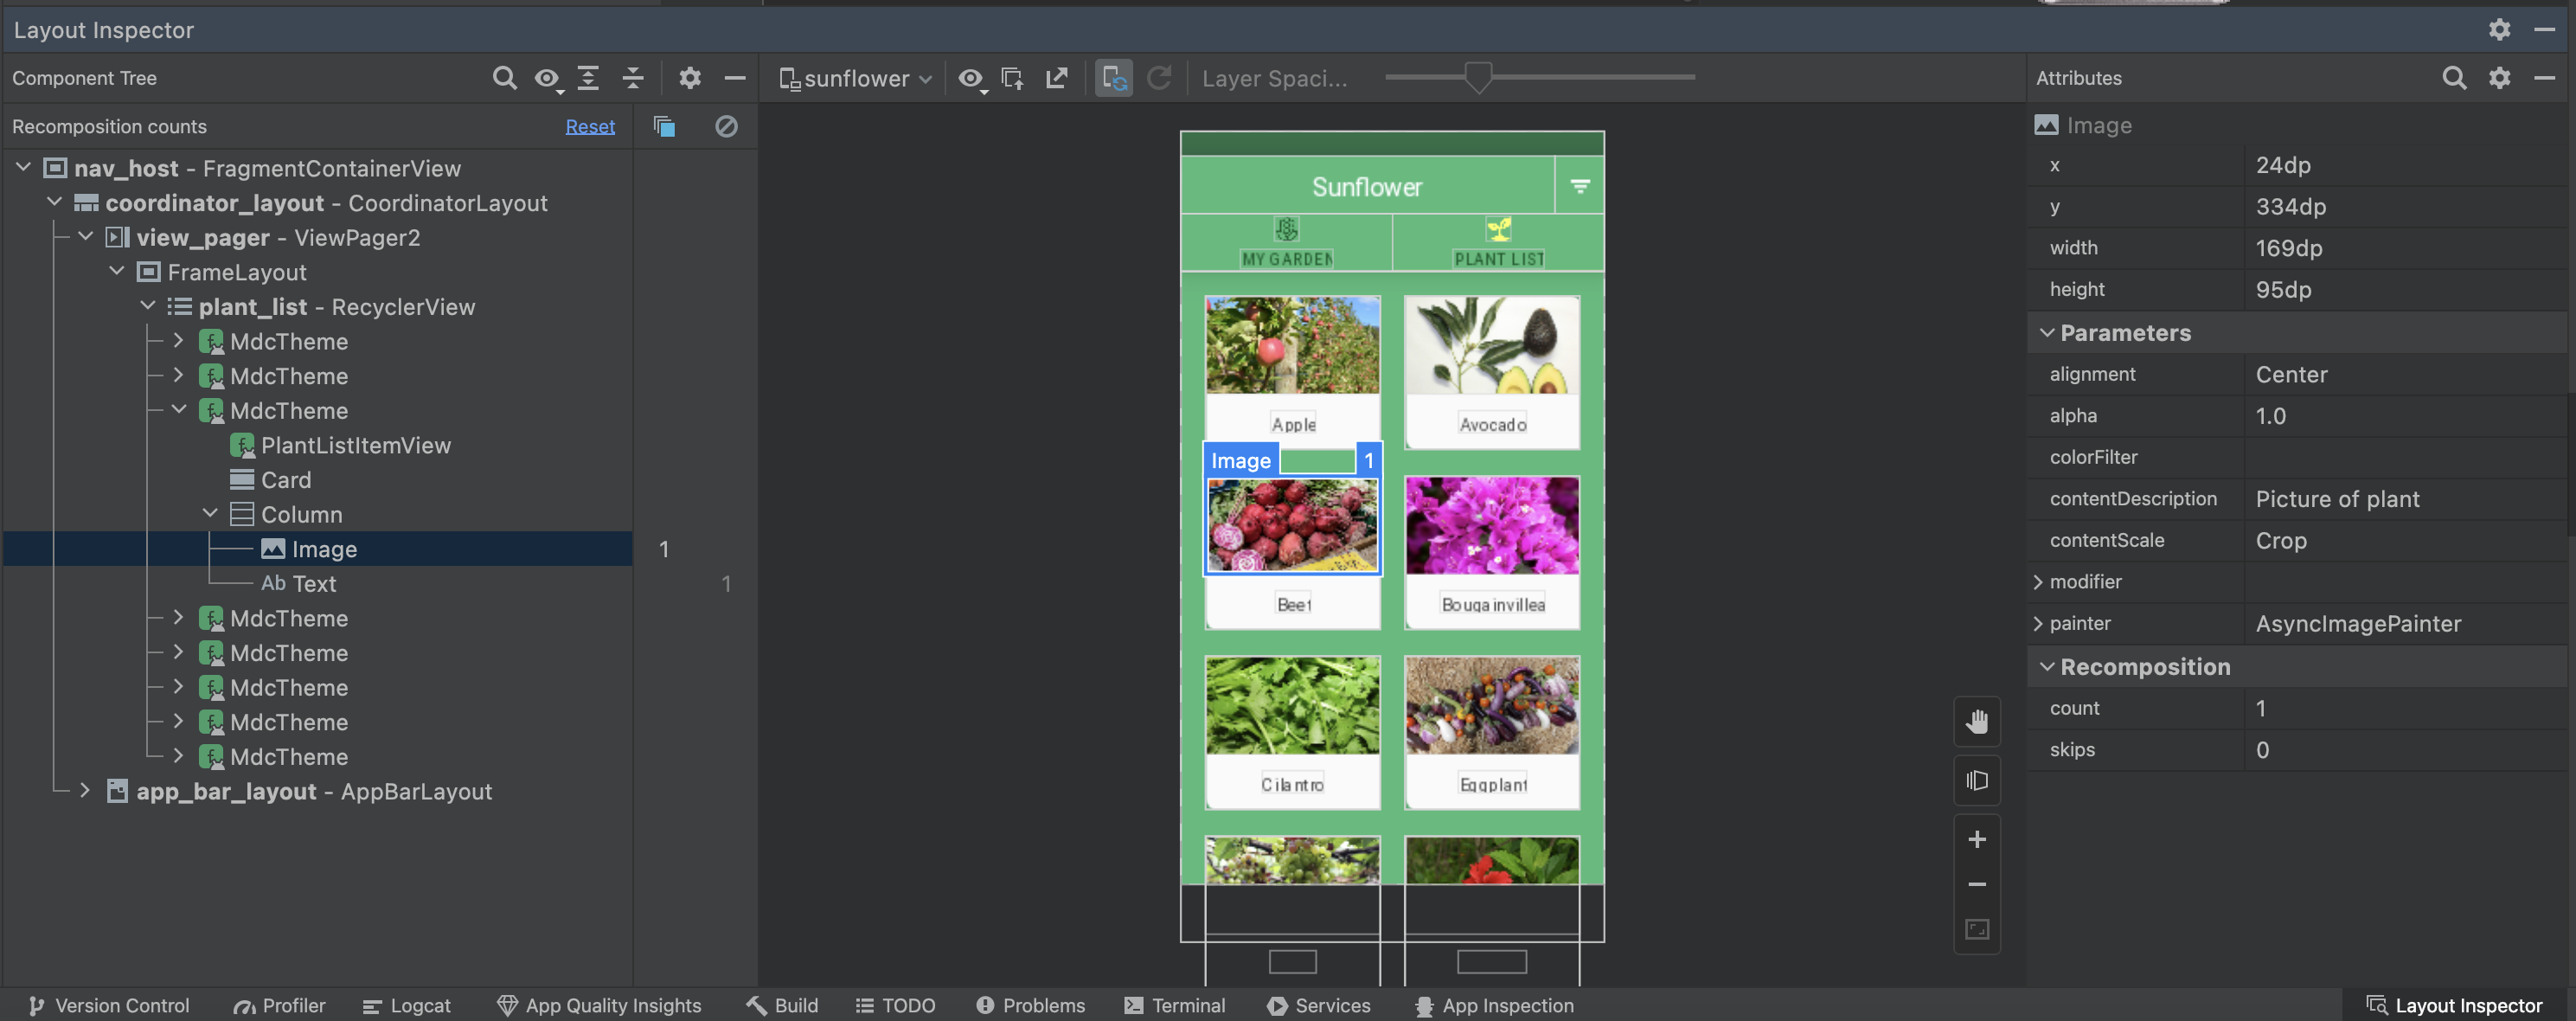 Captura de tela do Layout Inspector para o app de exemplo Sunflower